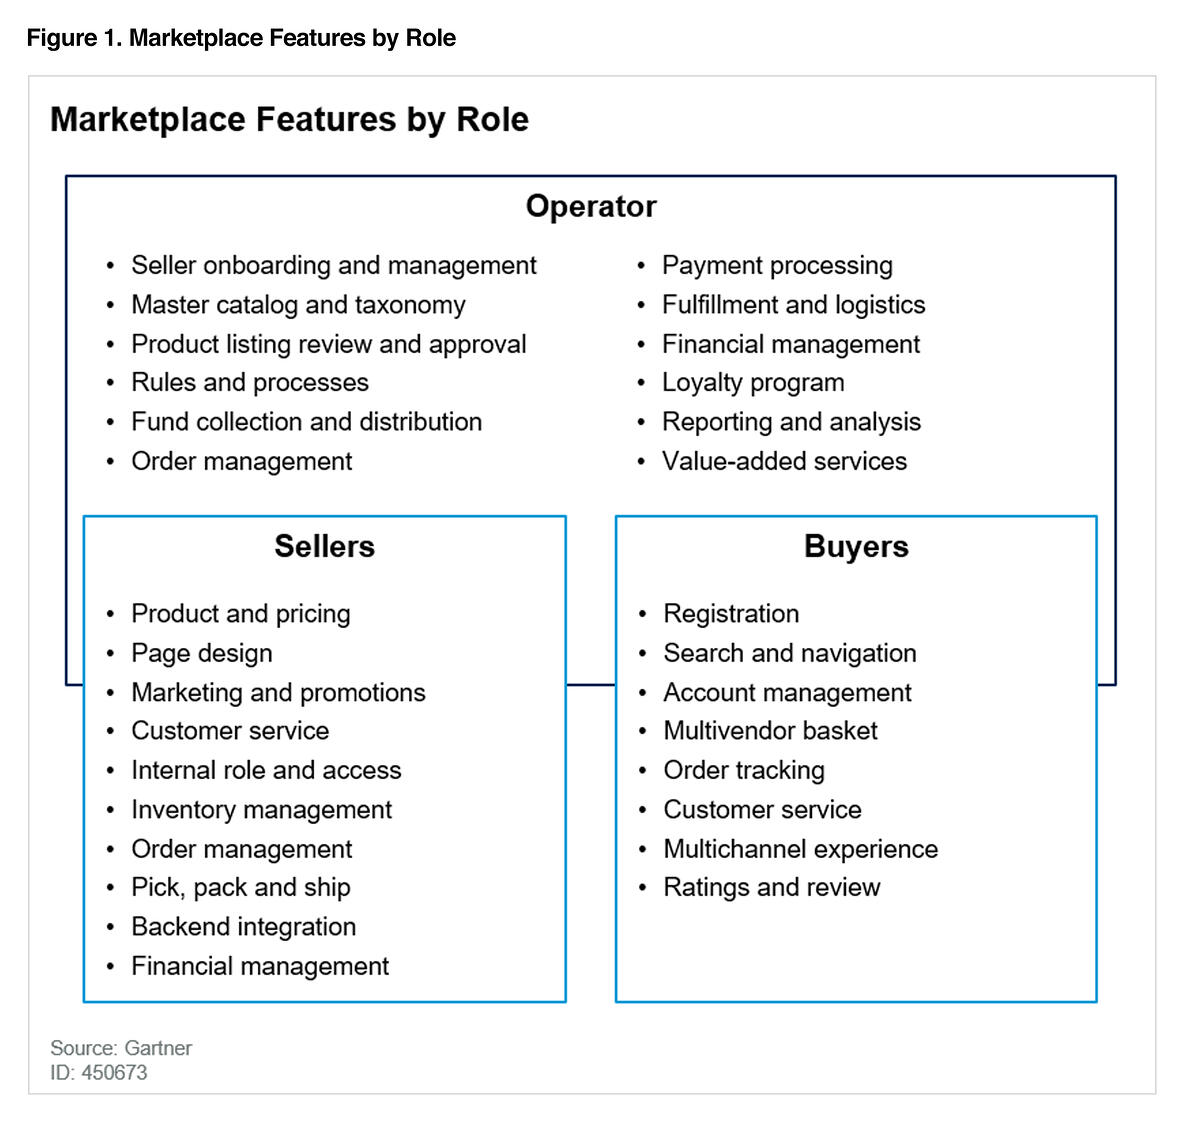 Enterprise marketplace development: Roles and features